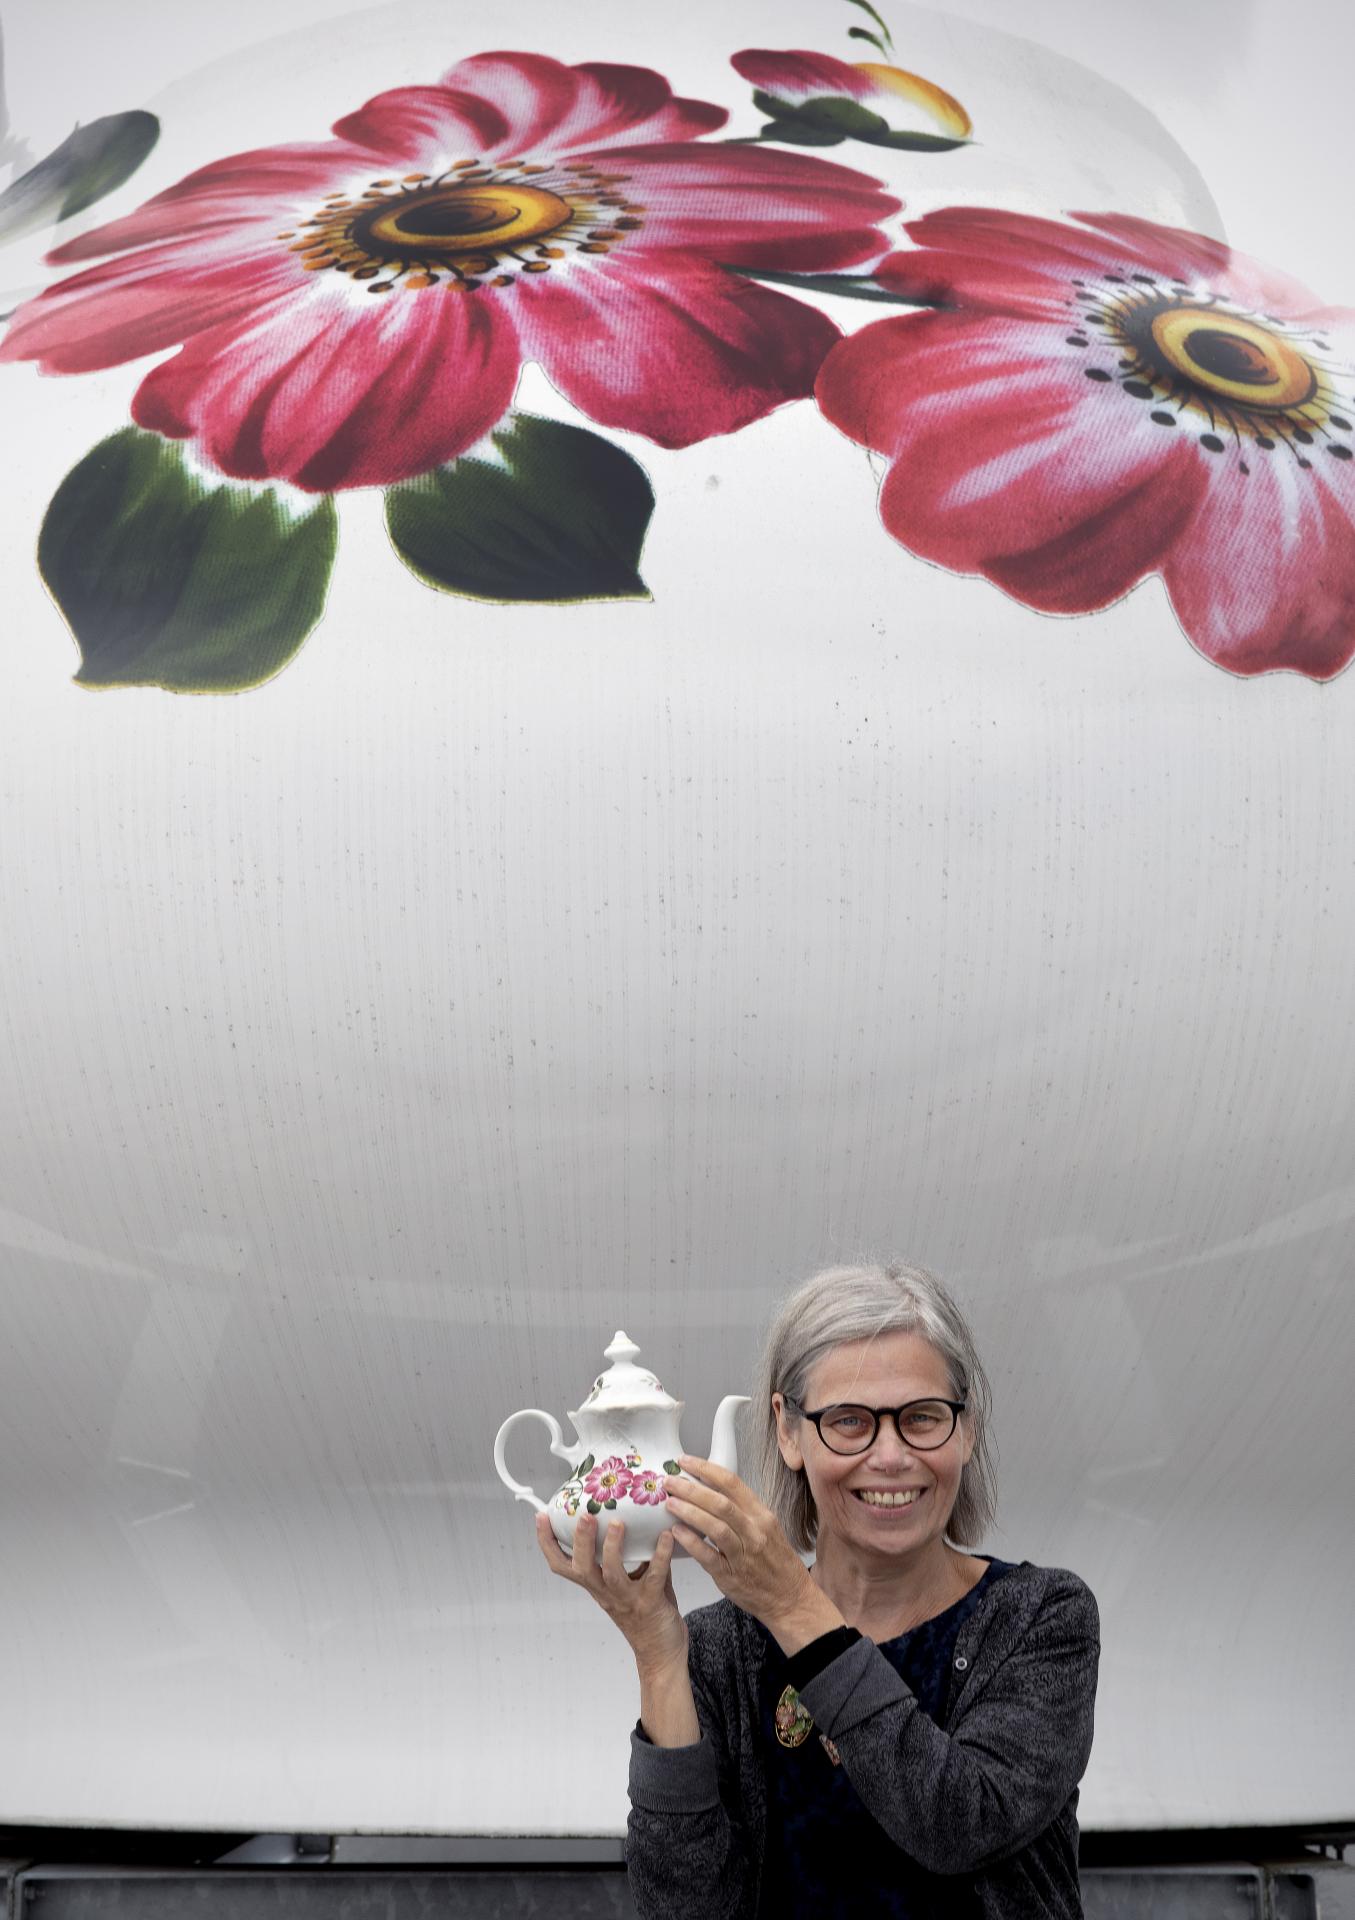 Kunstenaar Lily van der Stokker met een kleine theepot voor de grote theepot